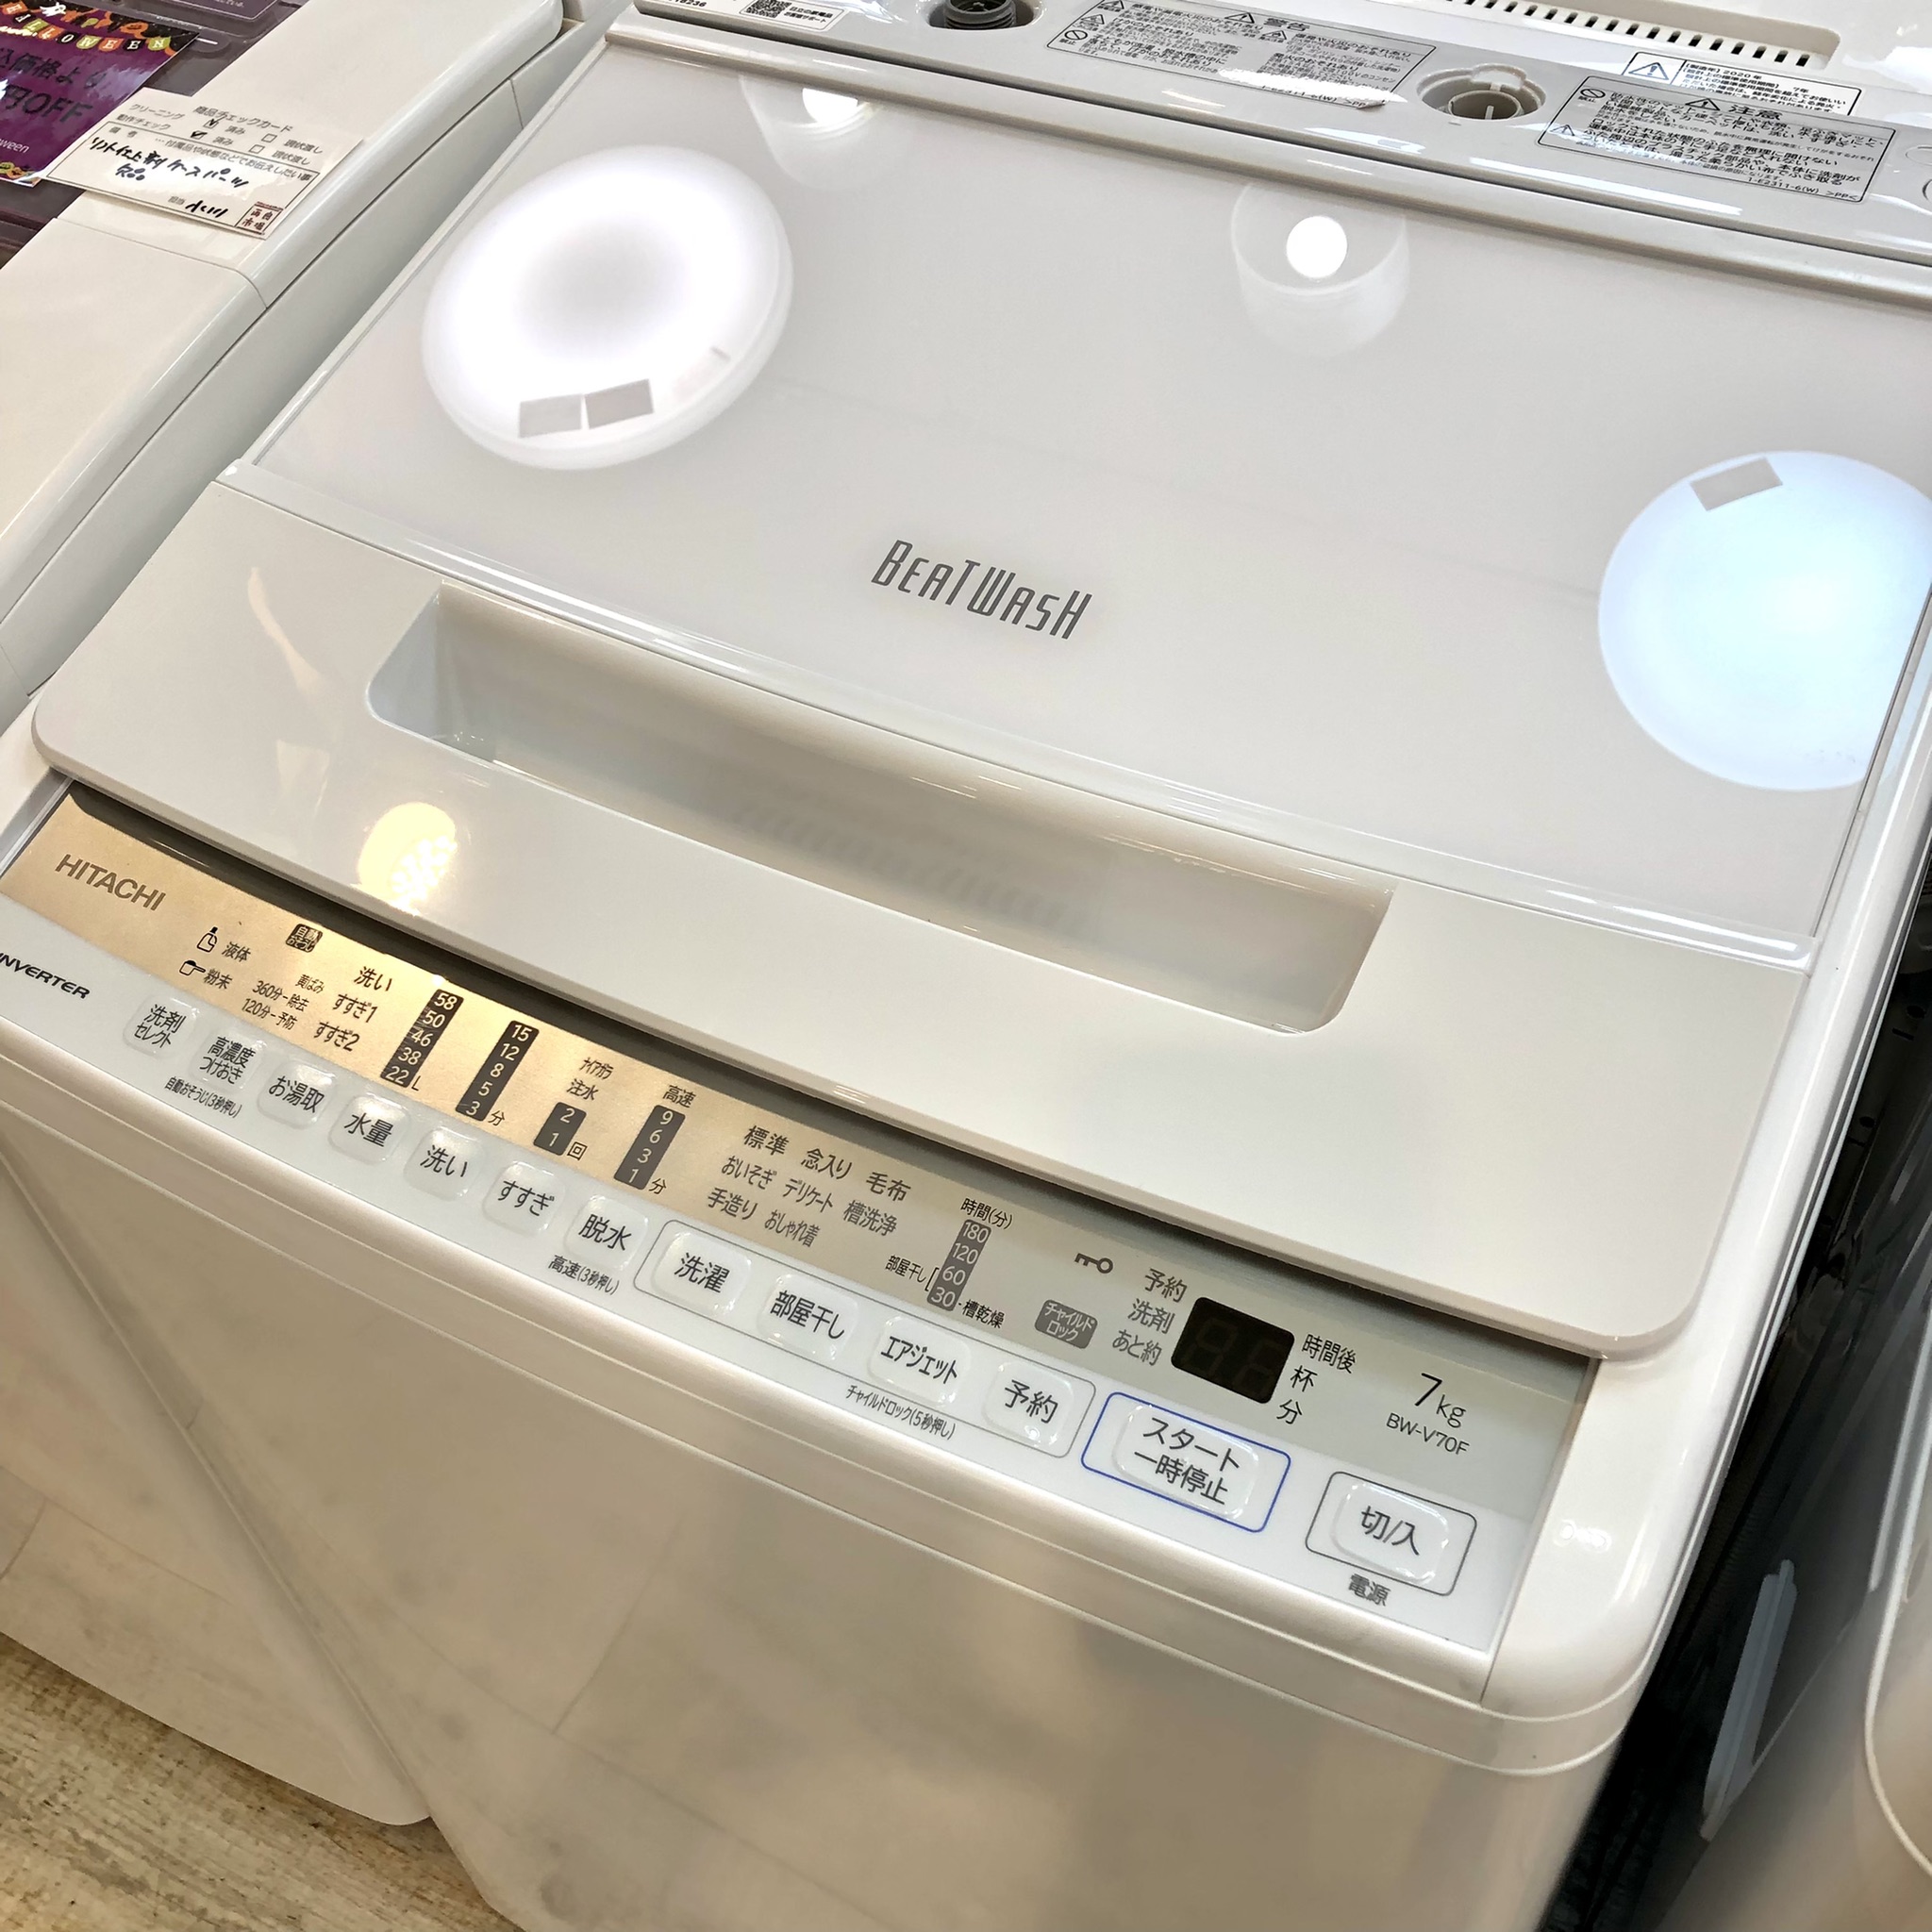 【〆12/20】2020年製 洗濯機 HITACHI ビートウォッシュ　7kg